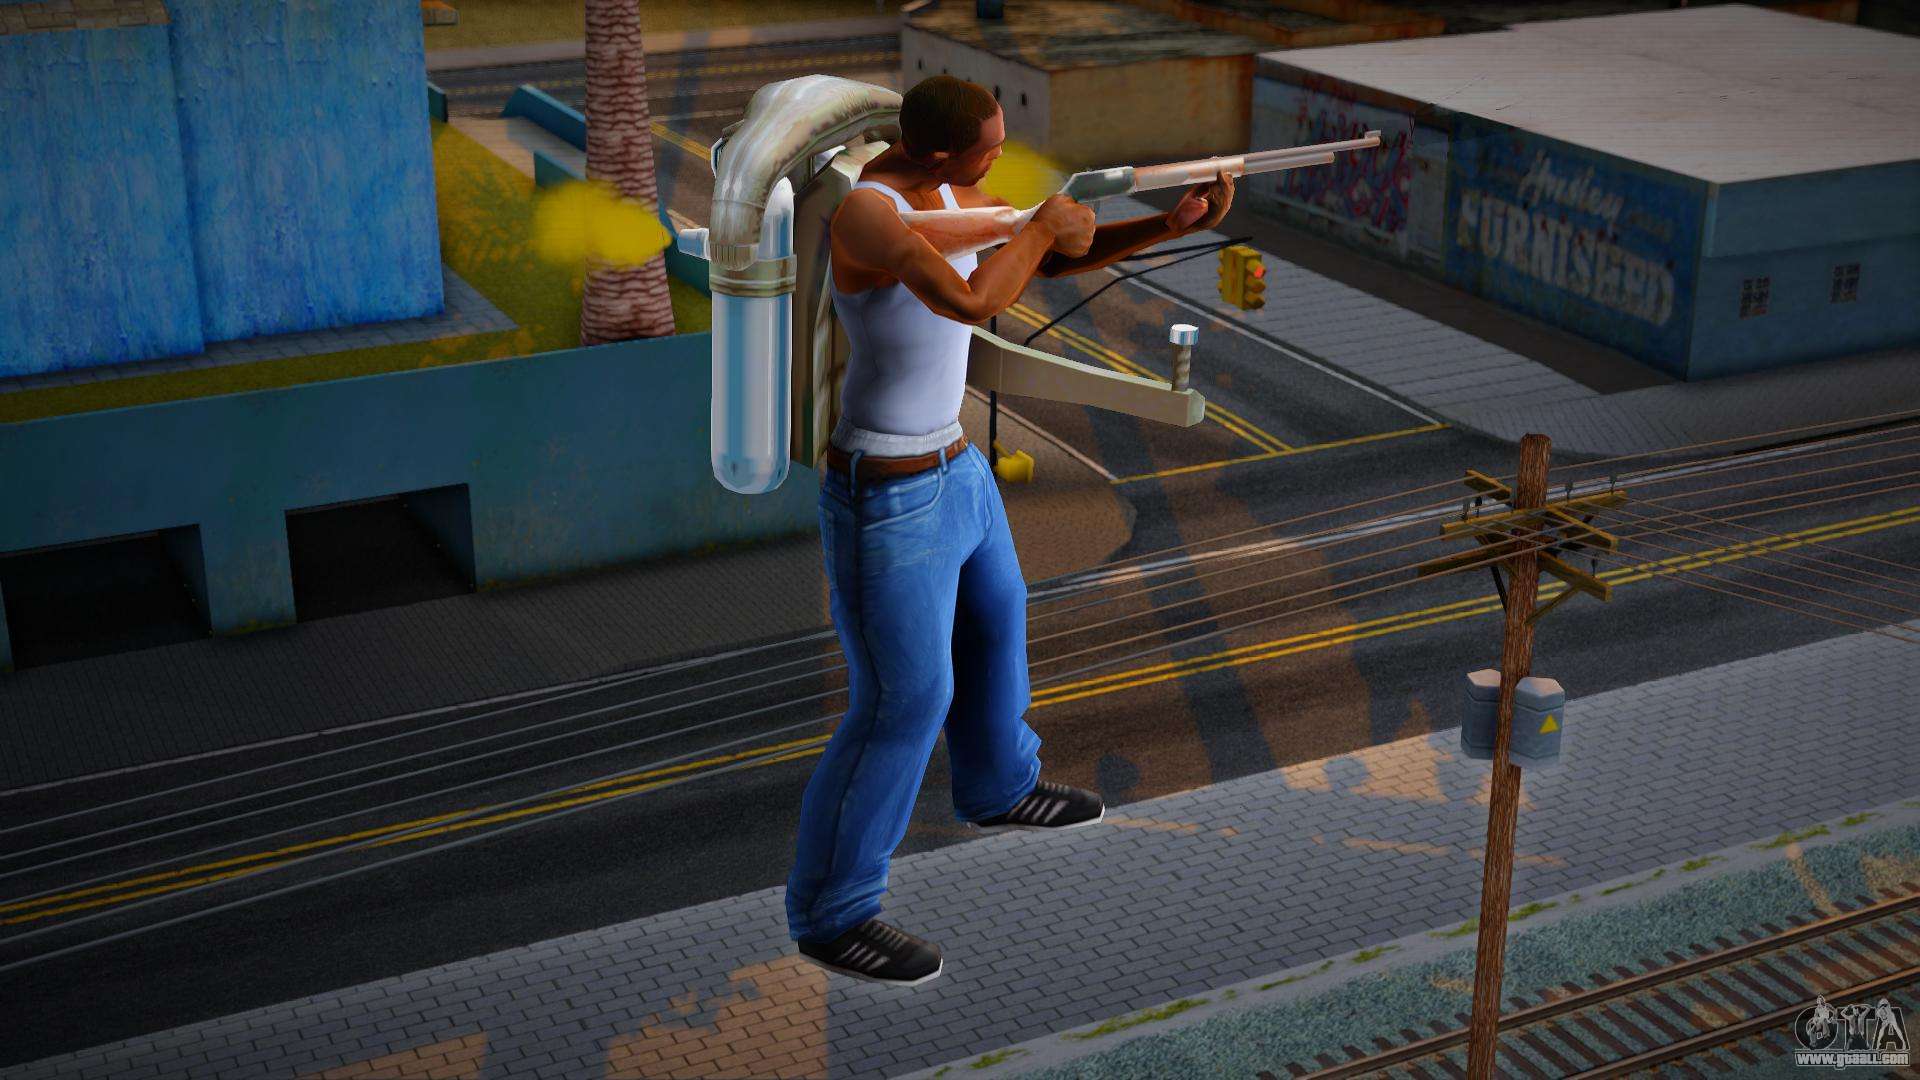 GTA San Andreas - Cadê o Game - Jetpack